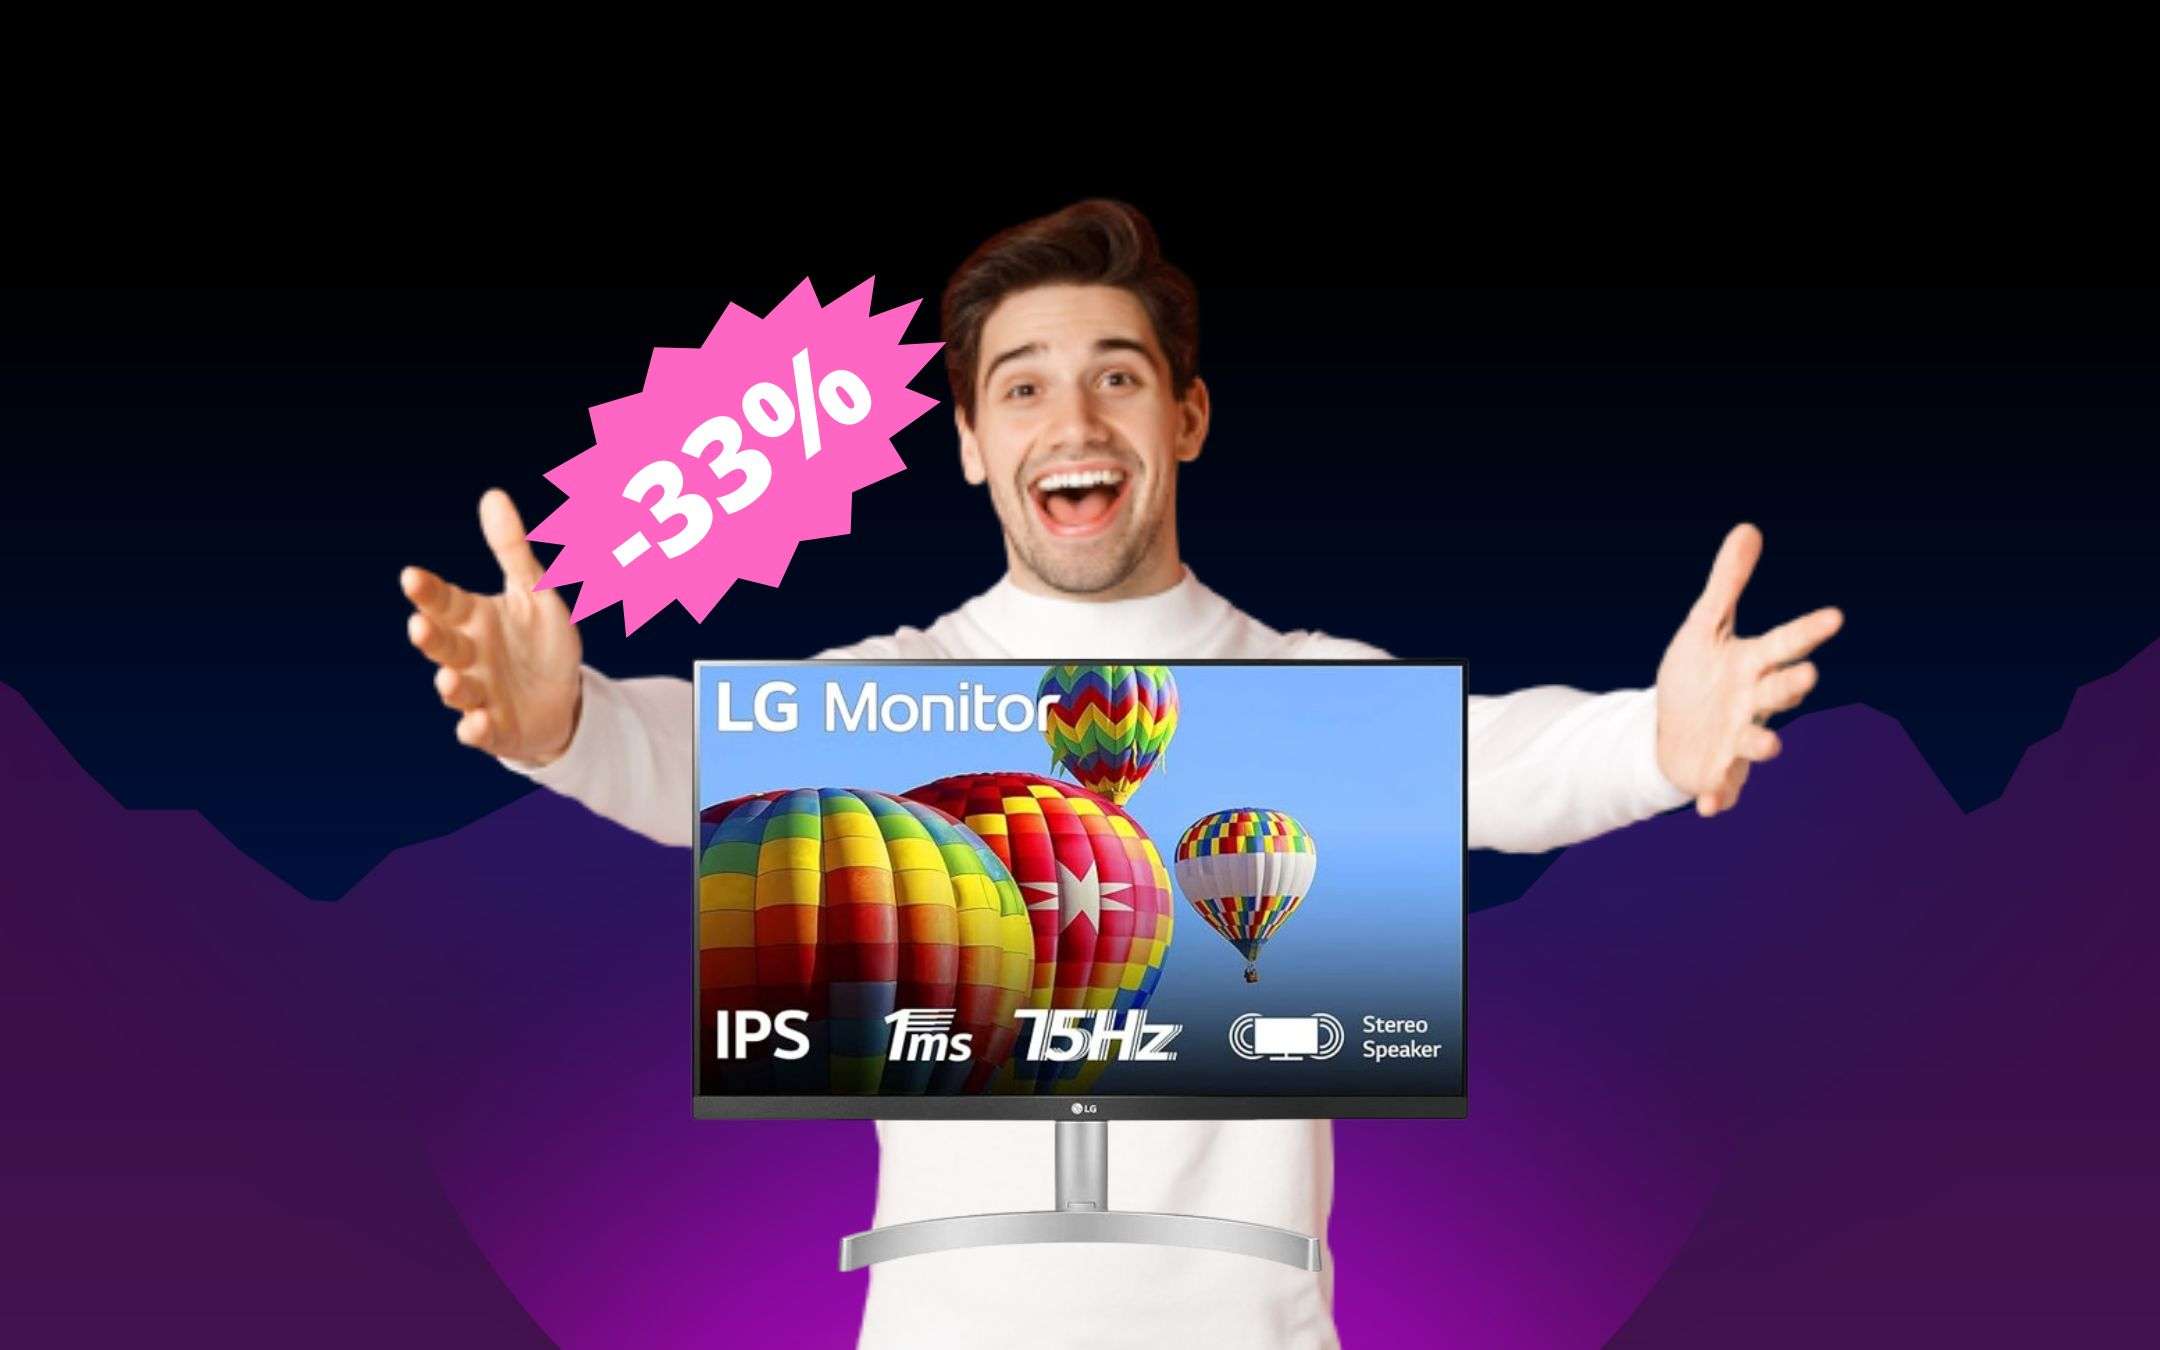 Monitor LG 27 4K a meno di 200€! 23% di sconto! - SpazioGames